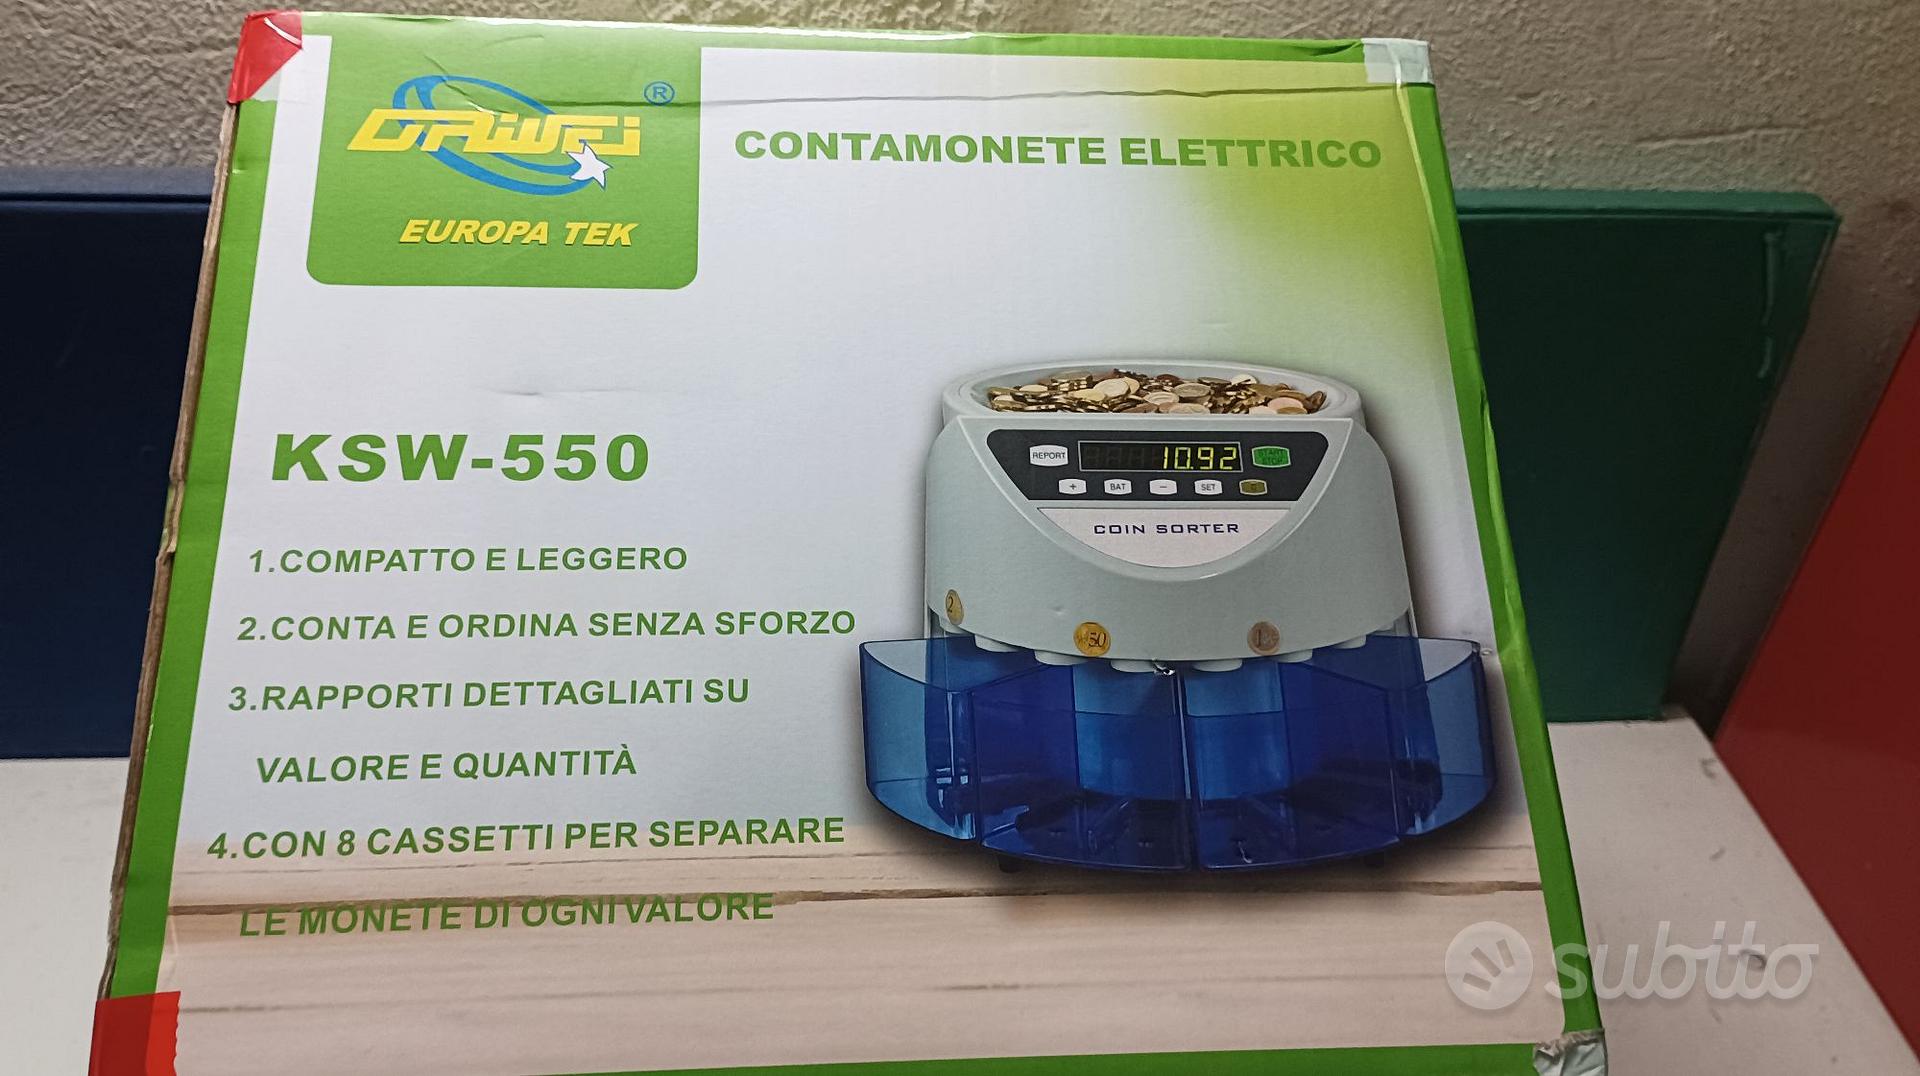 CONTAMONETE ELETTRONICO - Informatica In vendita a Roma